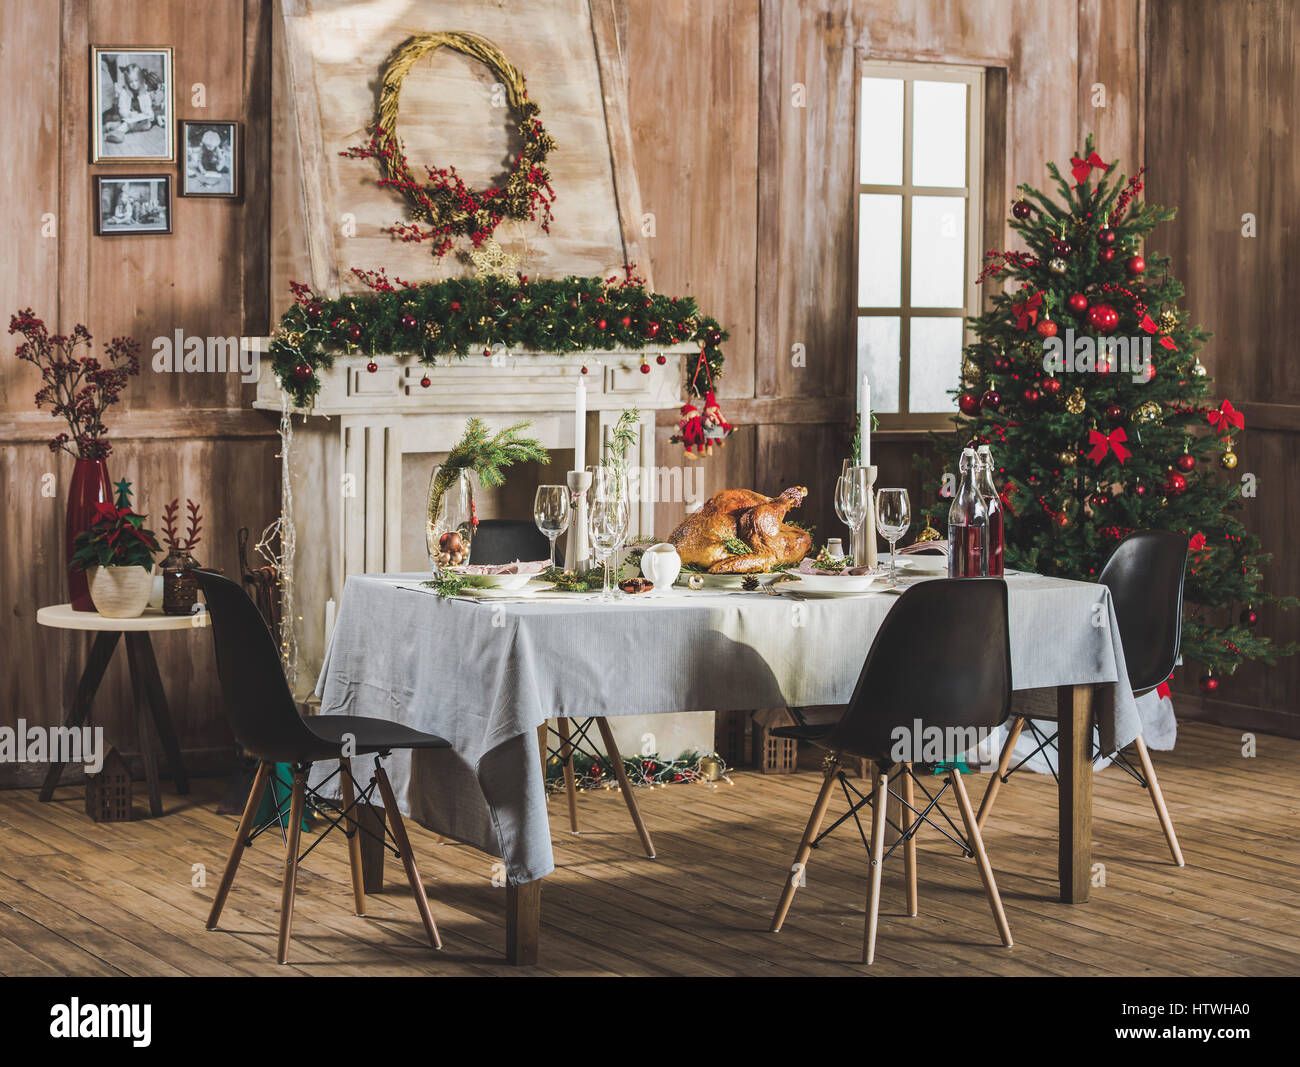 Lecker gebratene Pute auf serviert Urlaub Tisch dekoriert für Weihnachten Stockfoto